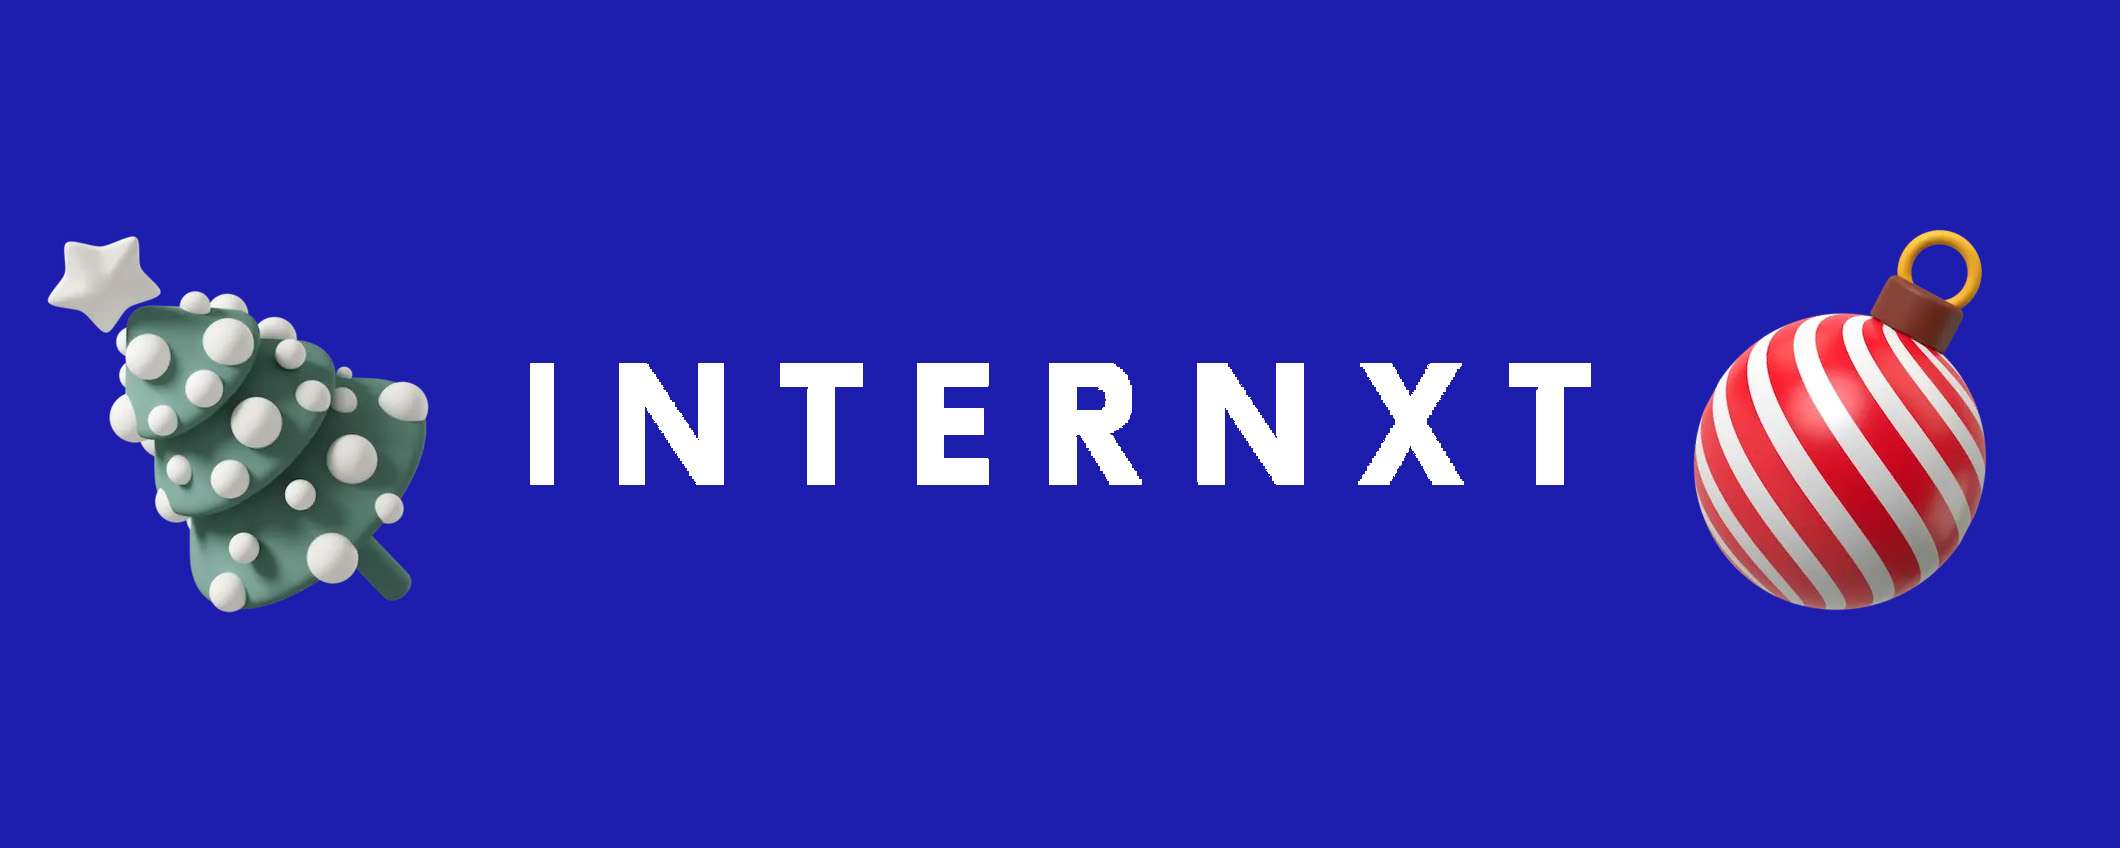 Internxt: sconto del 50% su tutti i piani cloud a vita!